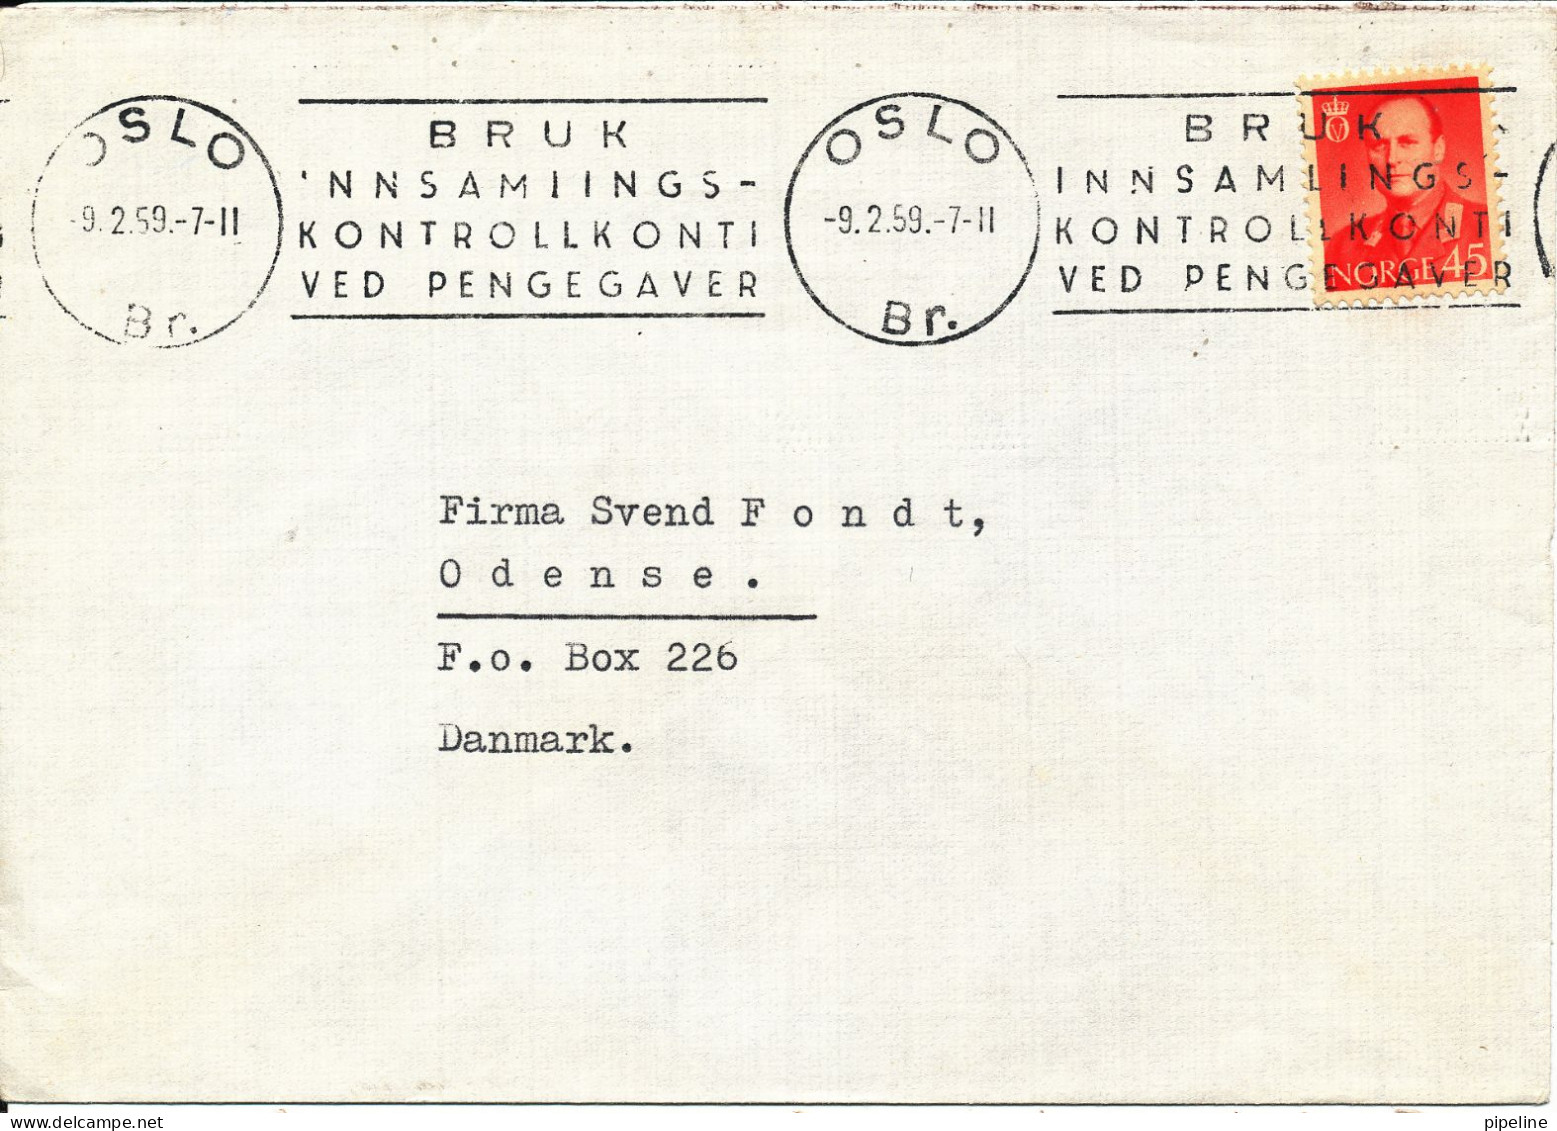 Norway Cover Sent To Denmark Oslo 9-2-1959 Single Franked (Bruk Innsamlingskontrollkonti Ved Pengegaver) - Covers & Documents